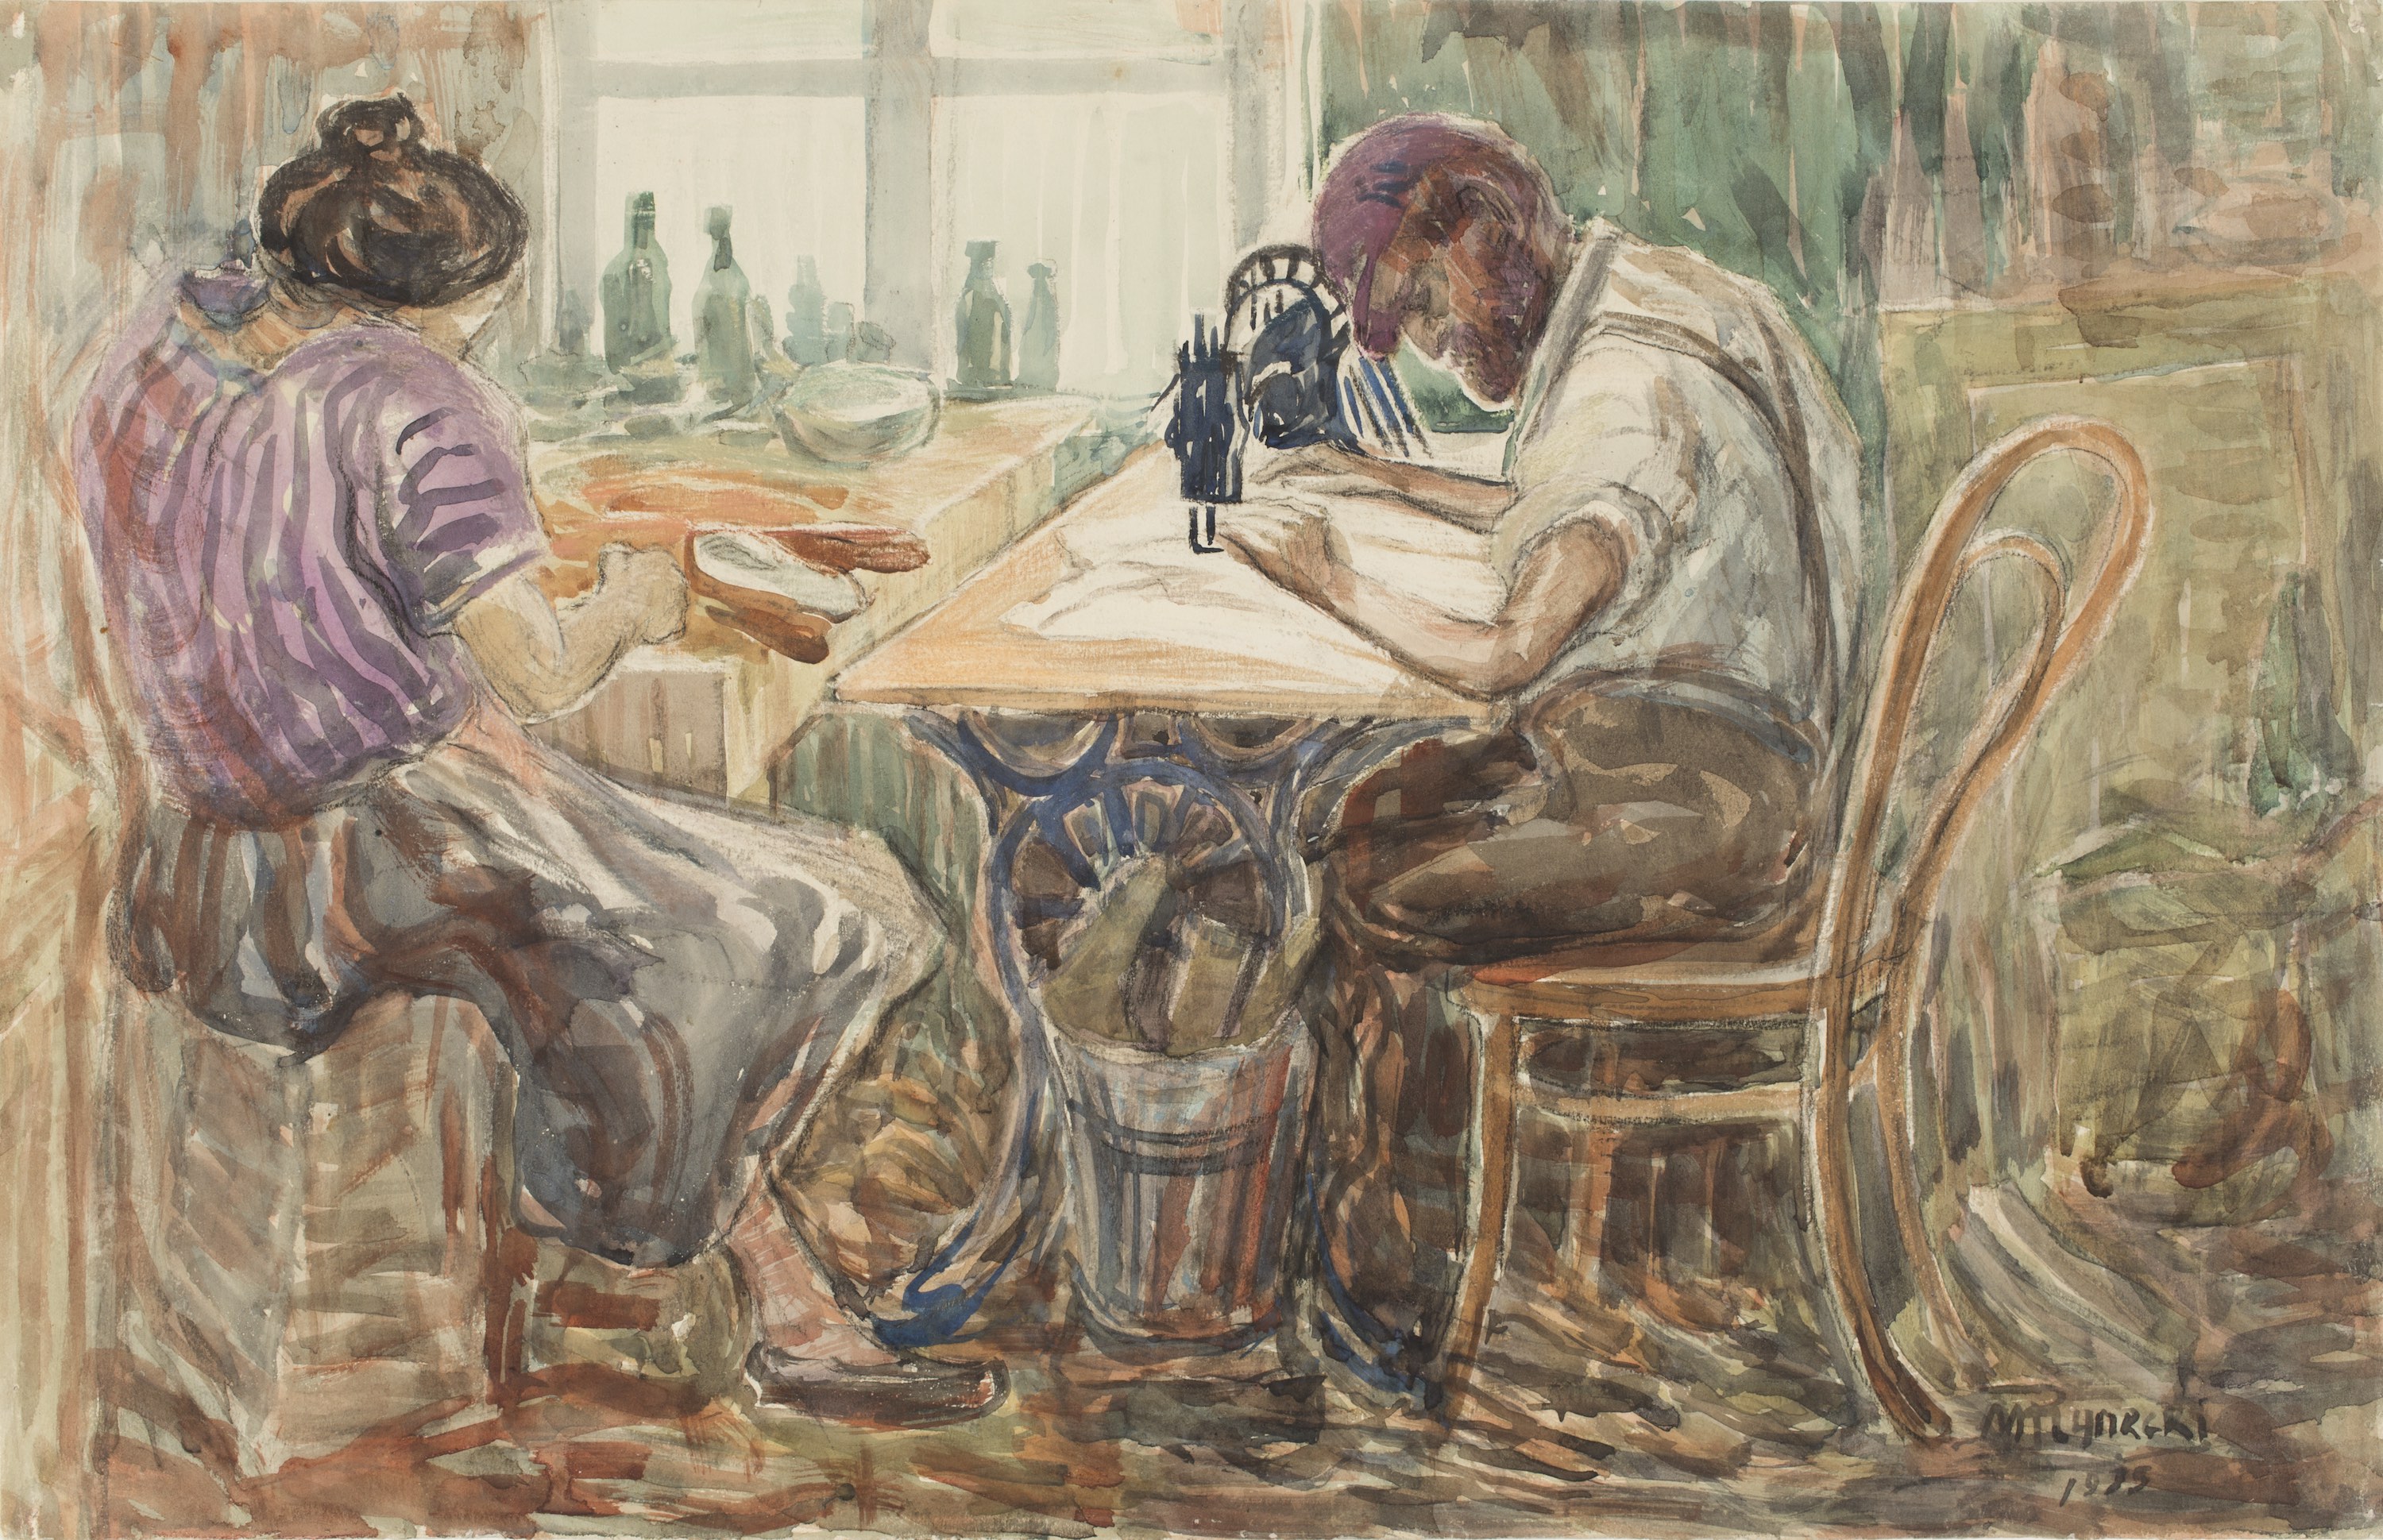 Tailleur au travail by Moshe Rynecki - 1935 Institut Historique Juif